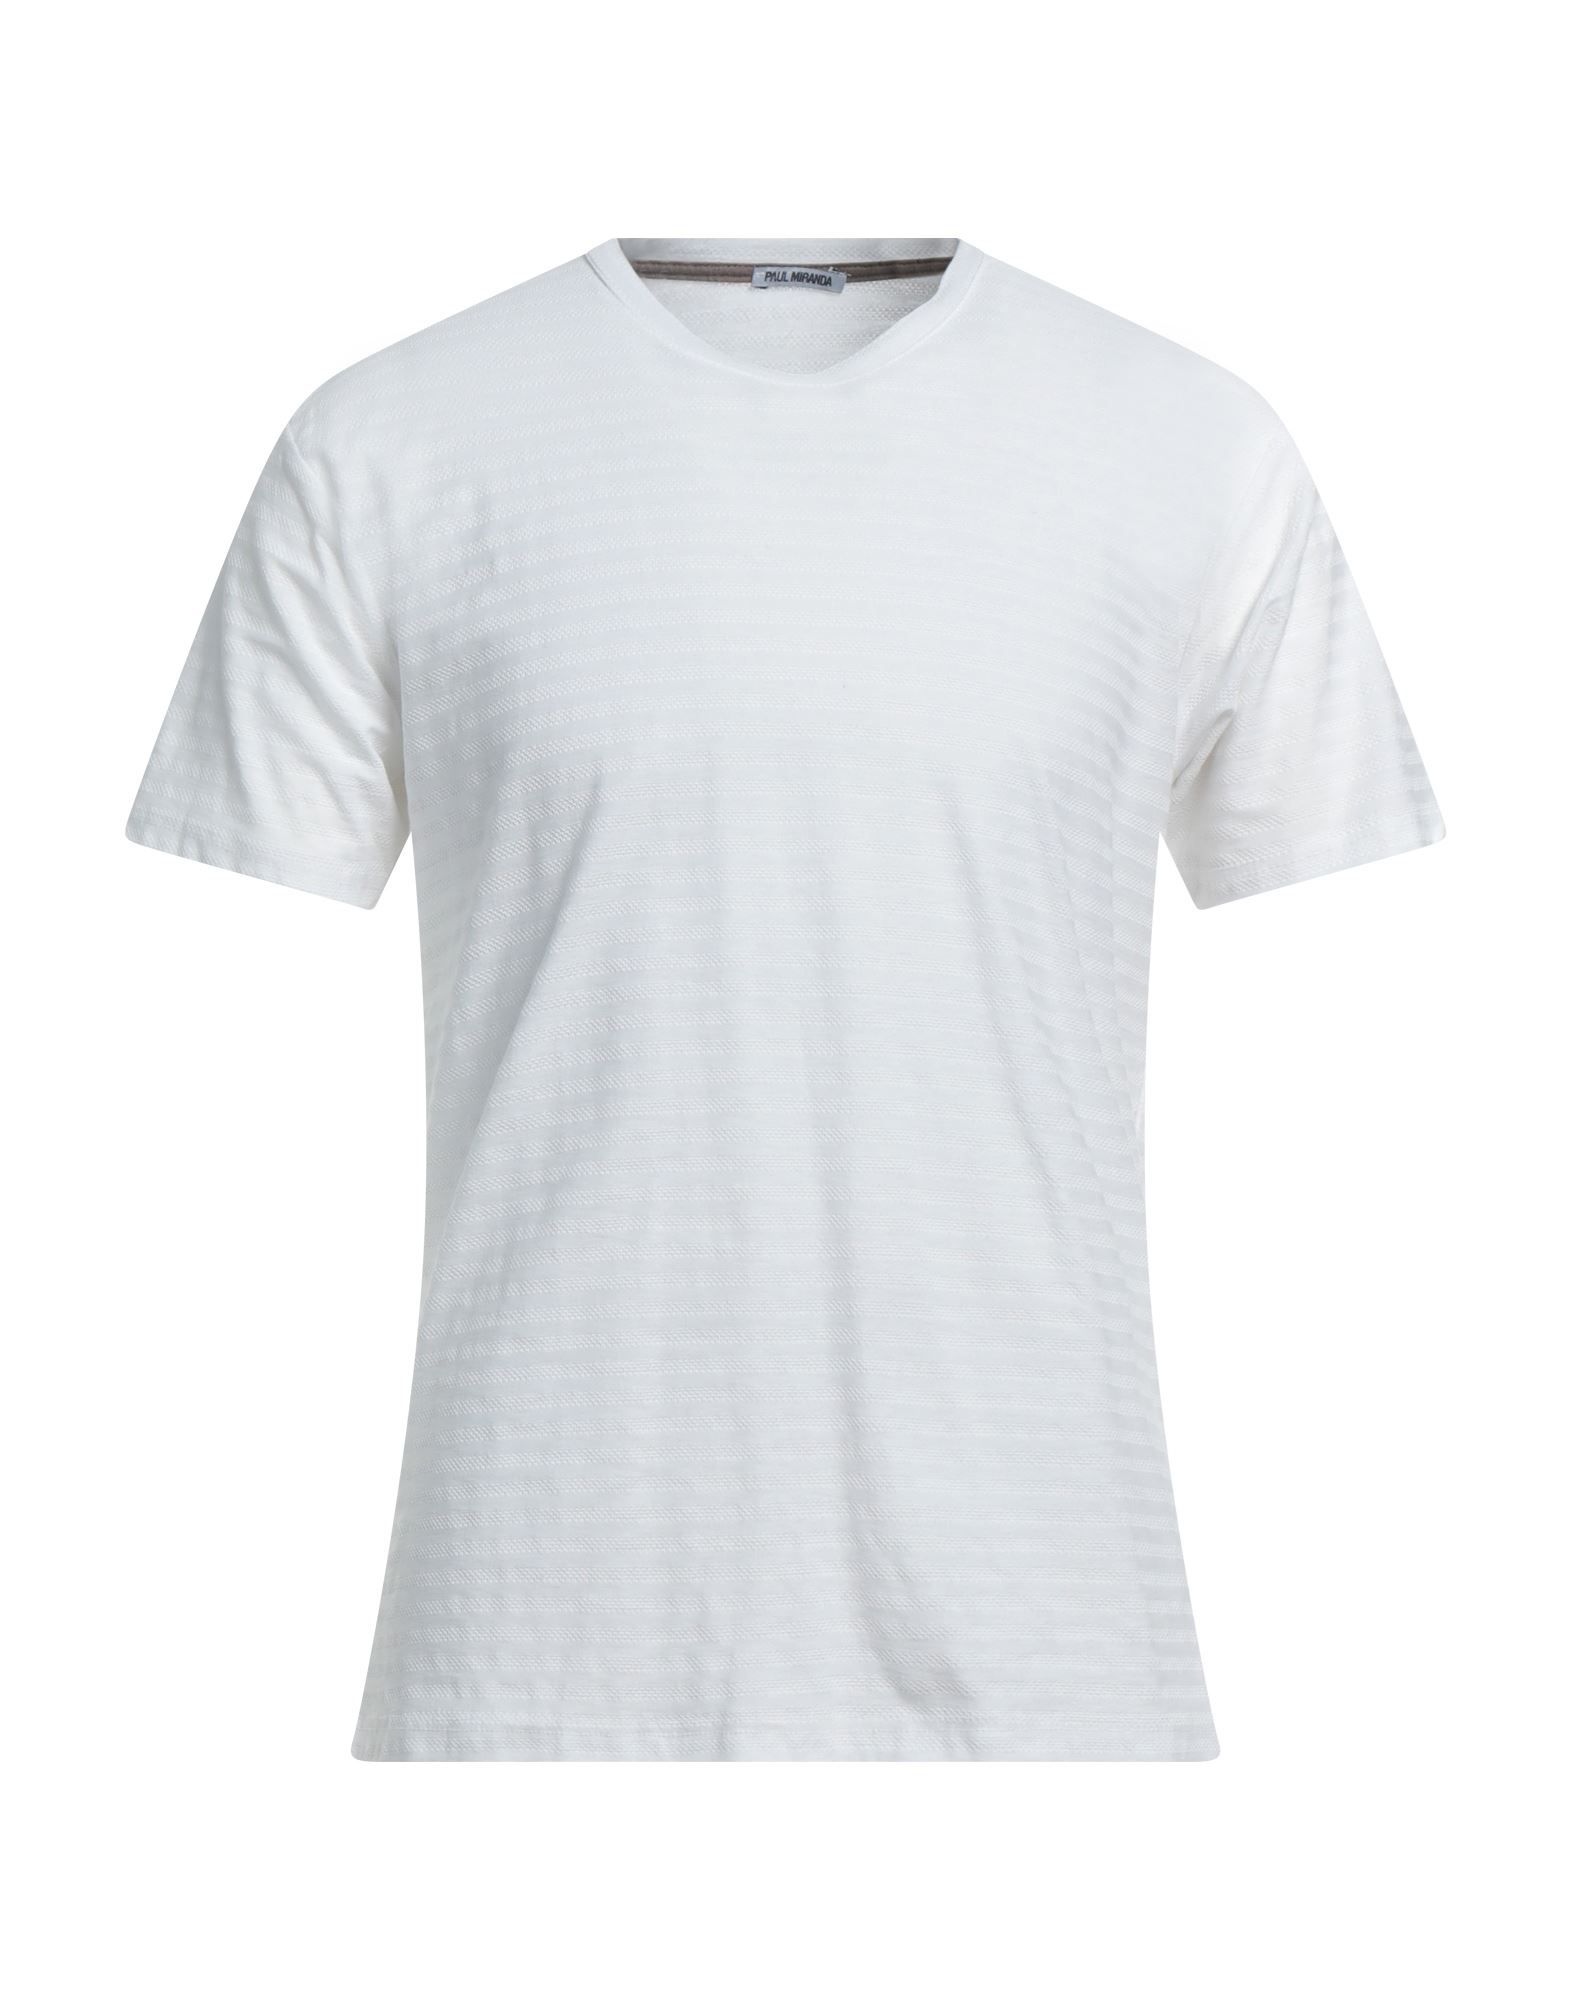 Paul Miranda T-shirts In White